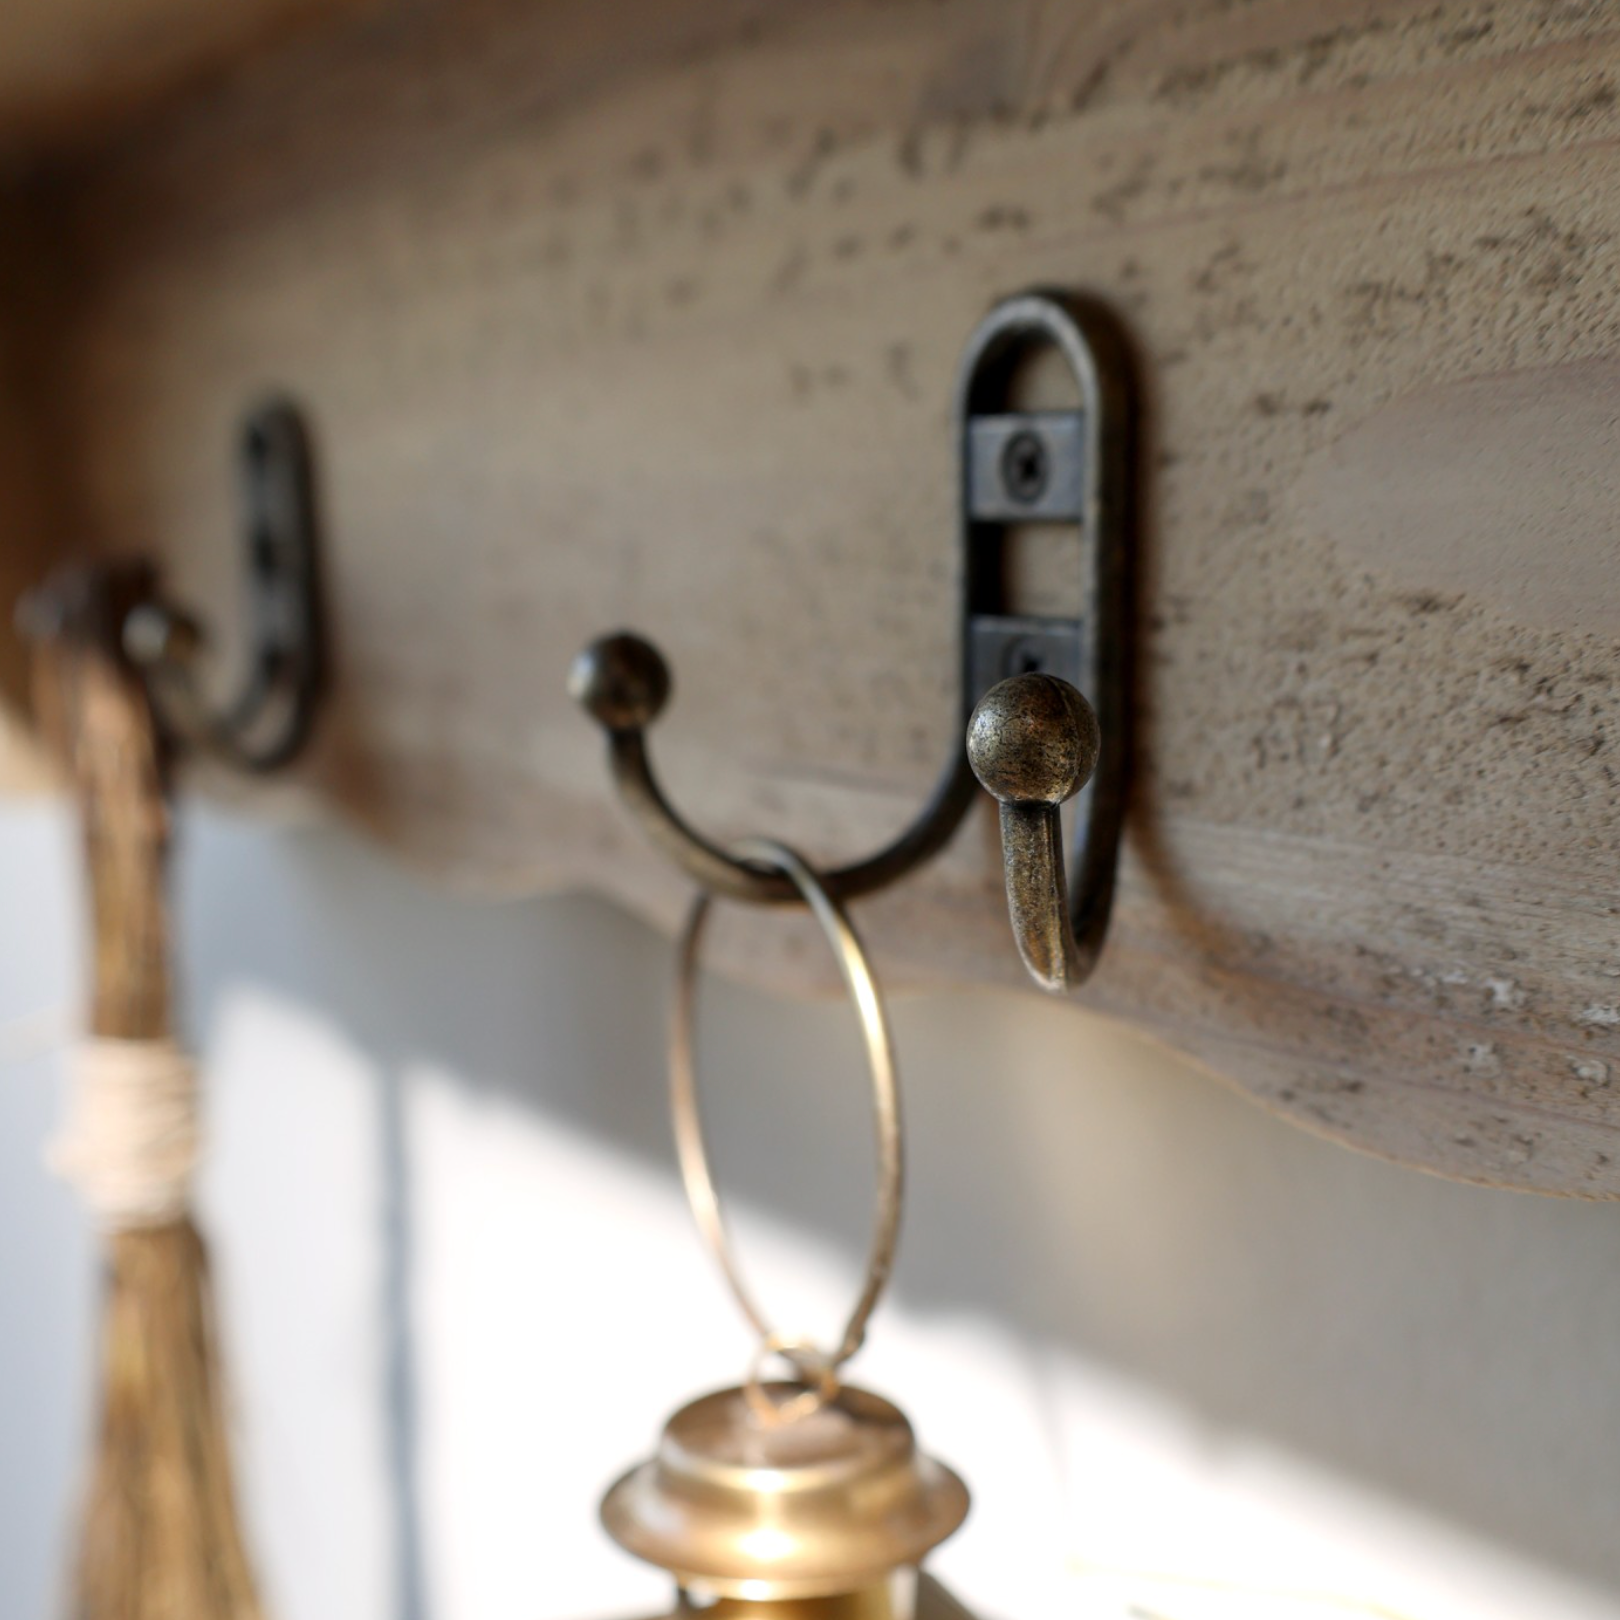 Metal hooks on wooden wall shelf.